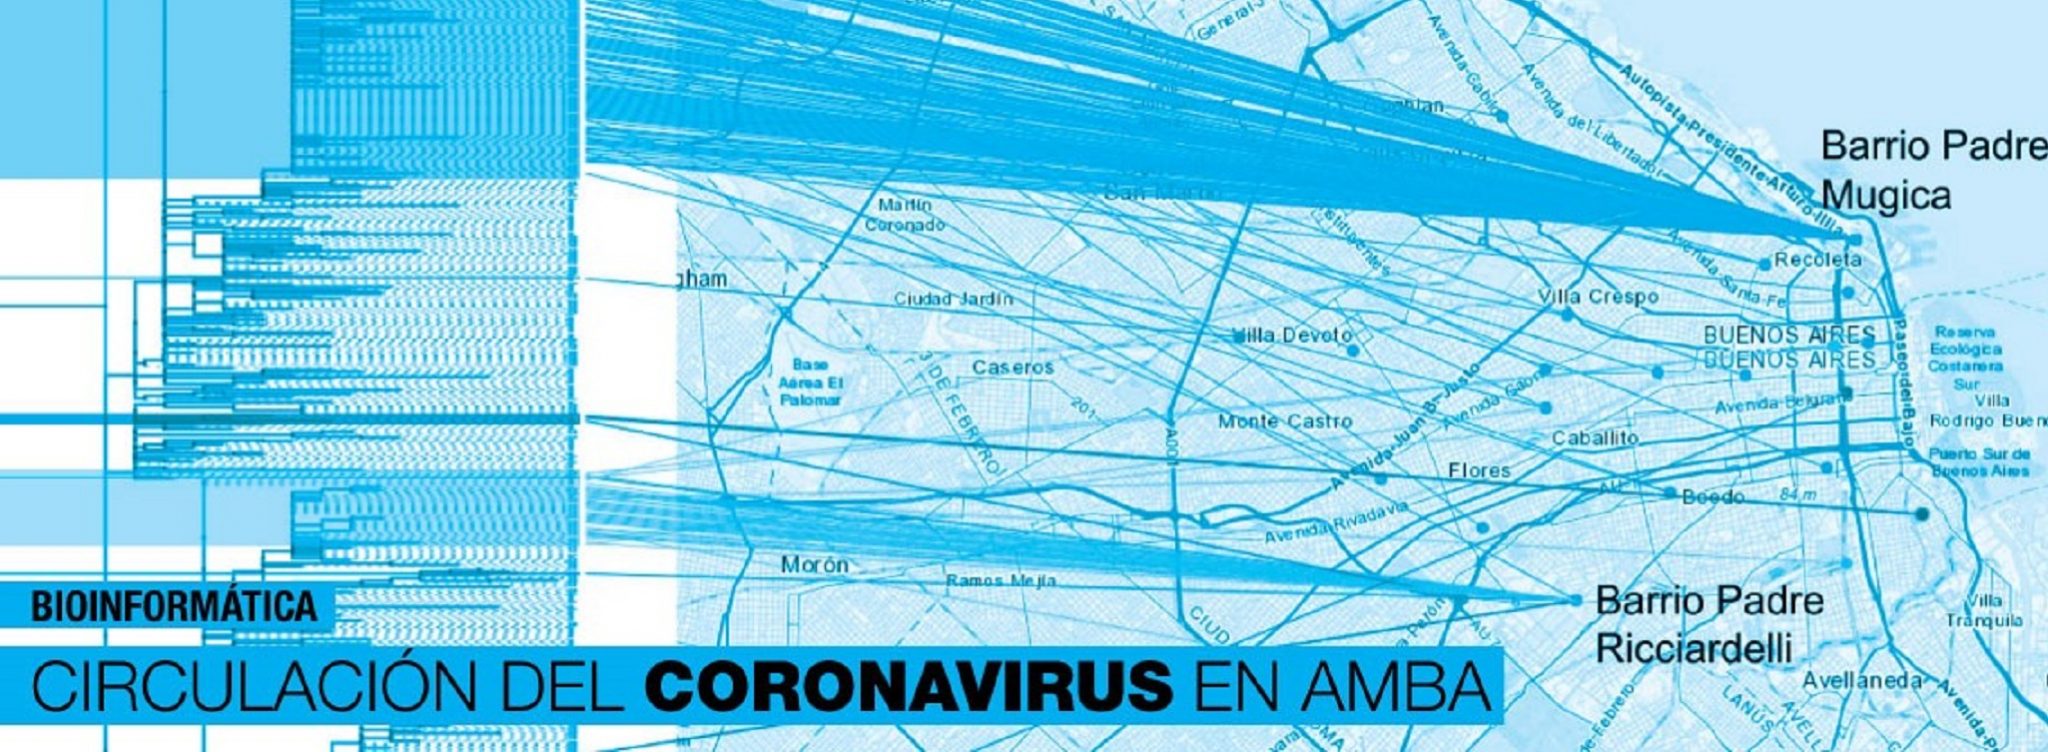 La circulación del virus COVID19 en Argentina AgendAR